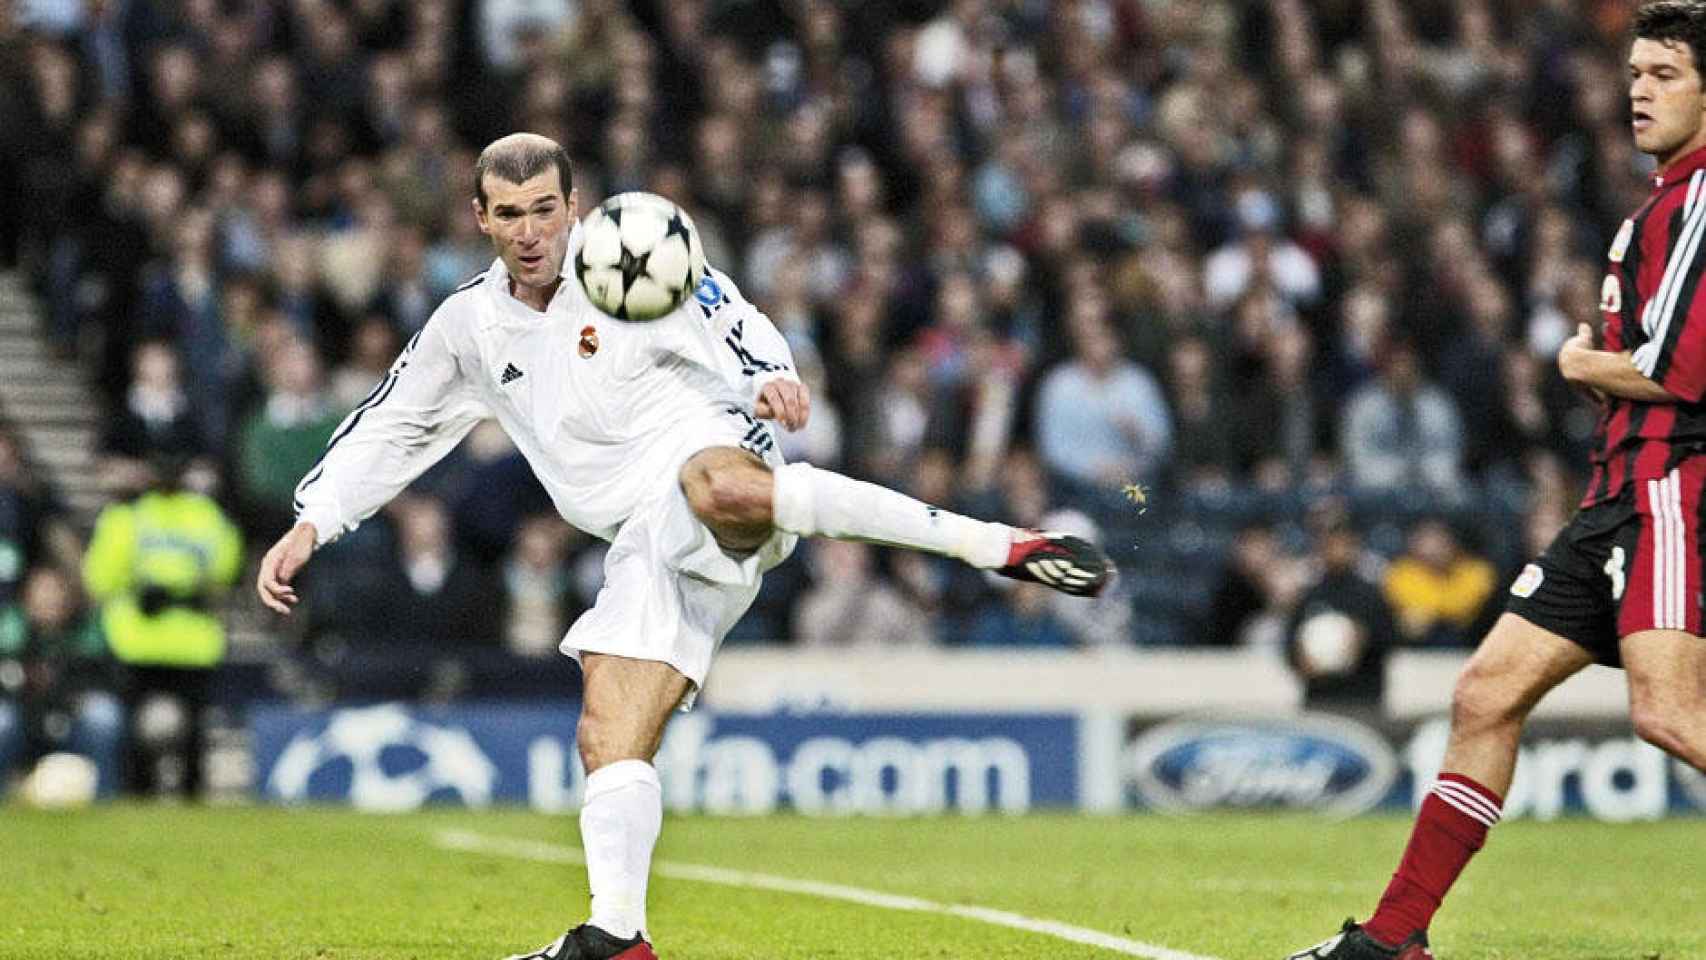 Zidane, en el momento de rematar el balón en la final de la Champions 2002.